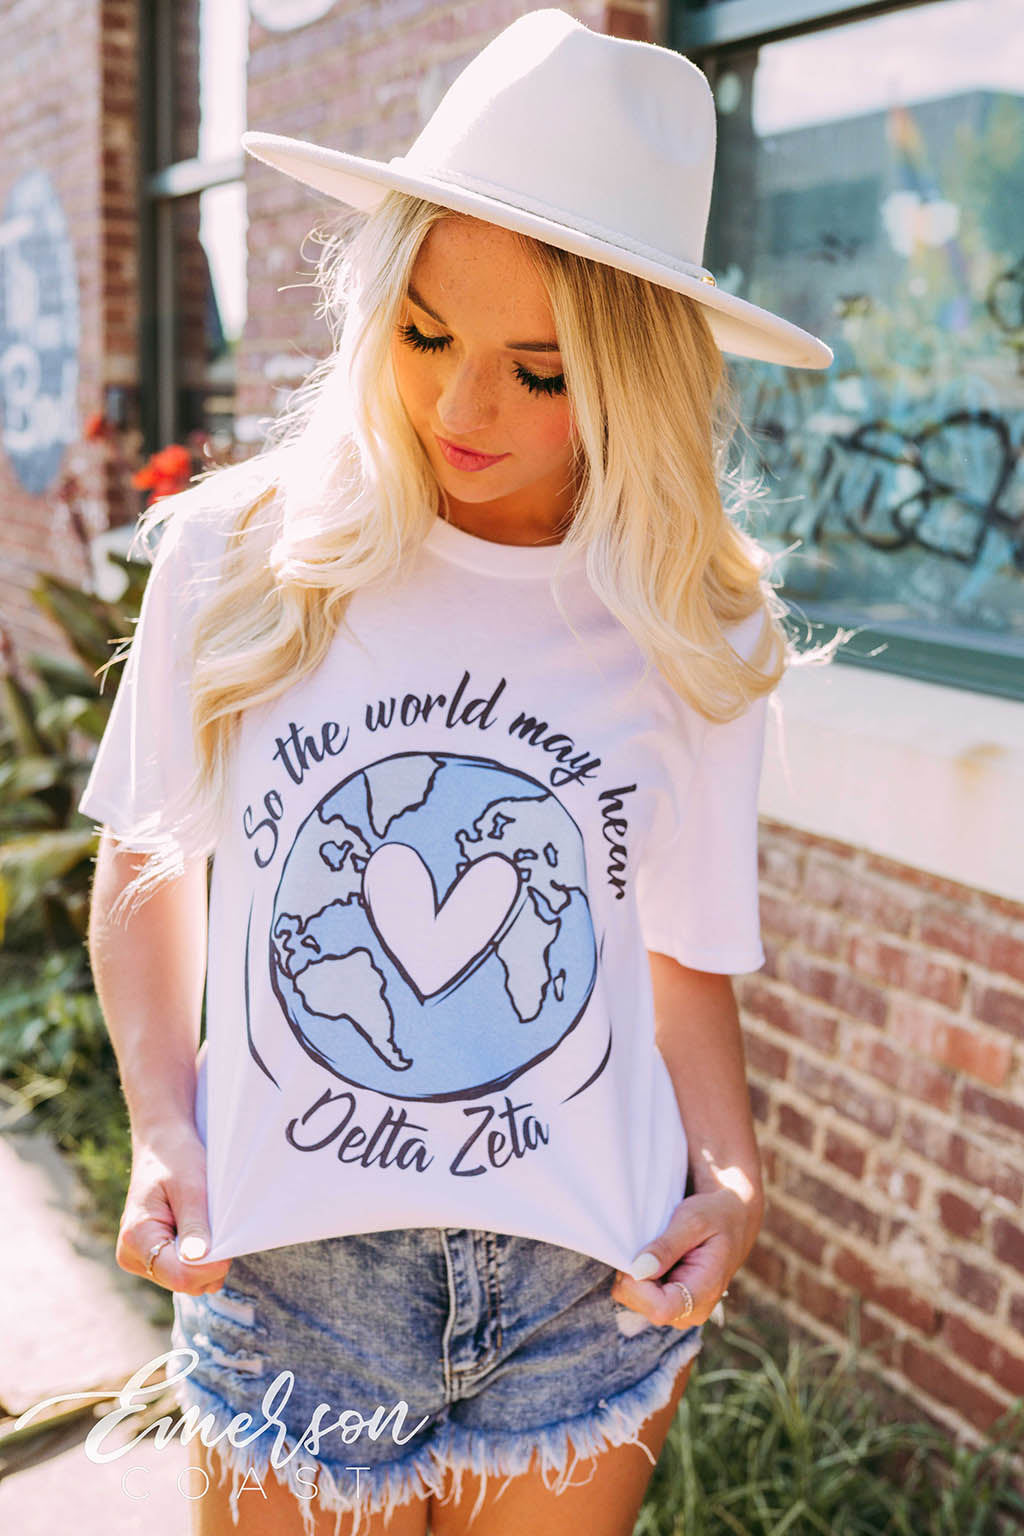 Delta Zeta Philanthropy So The World May Hear Tee